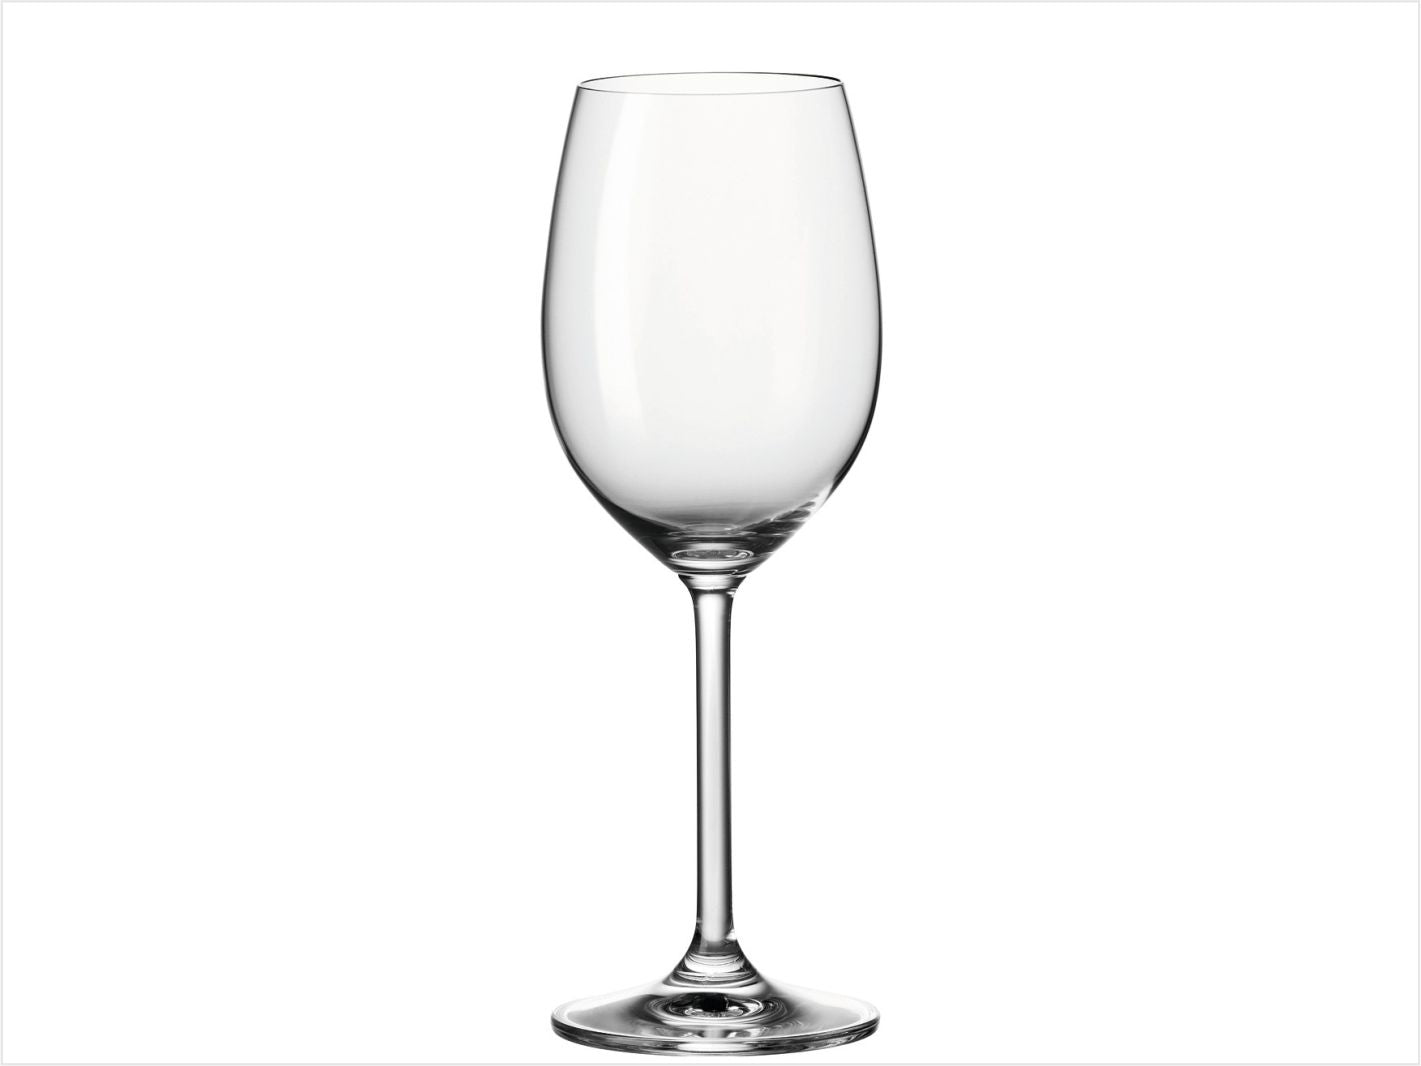 Weißweinglas DAILY 370ml